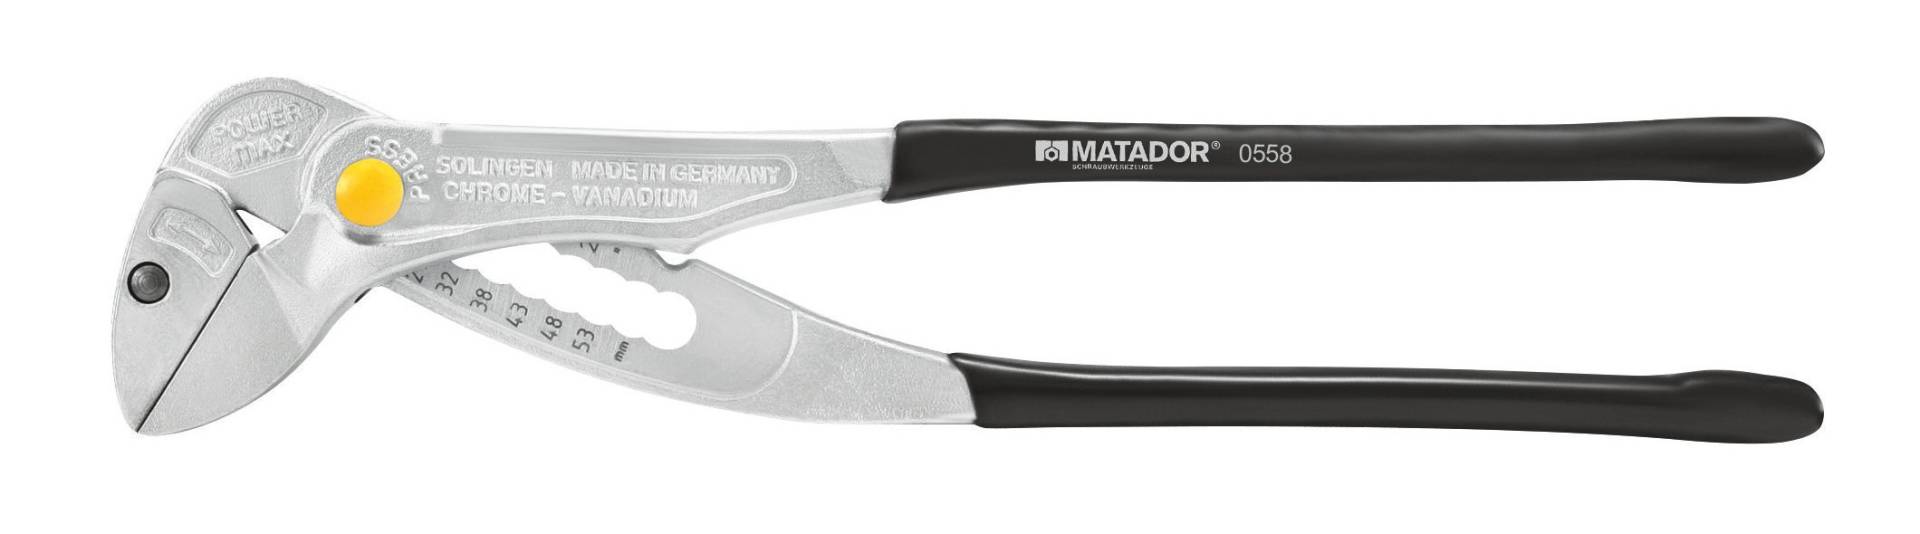 MATADOR Spezial-Montagezange Armaturen, 250 mm, 0558 0001 von MATADOR Schraubwerkzeuge